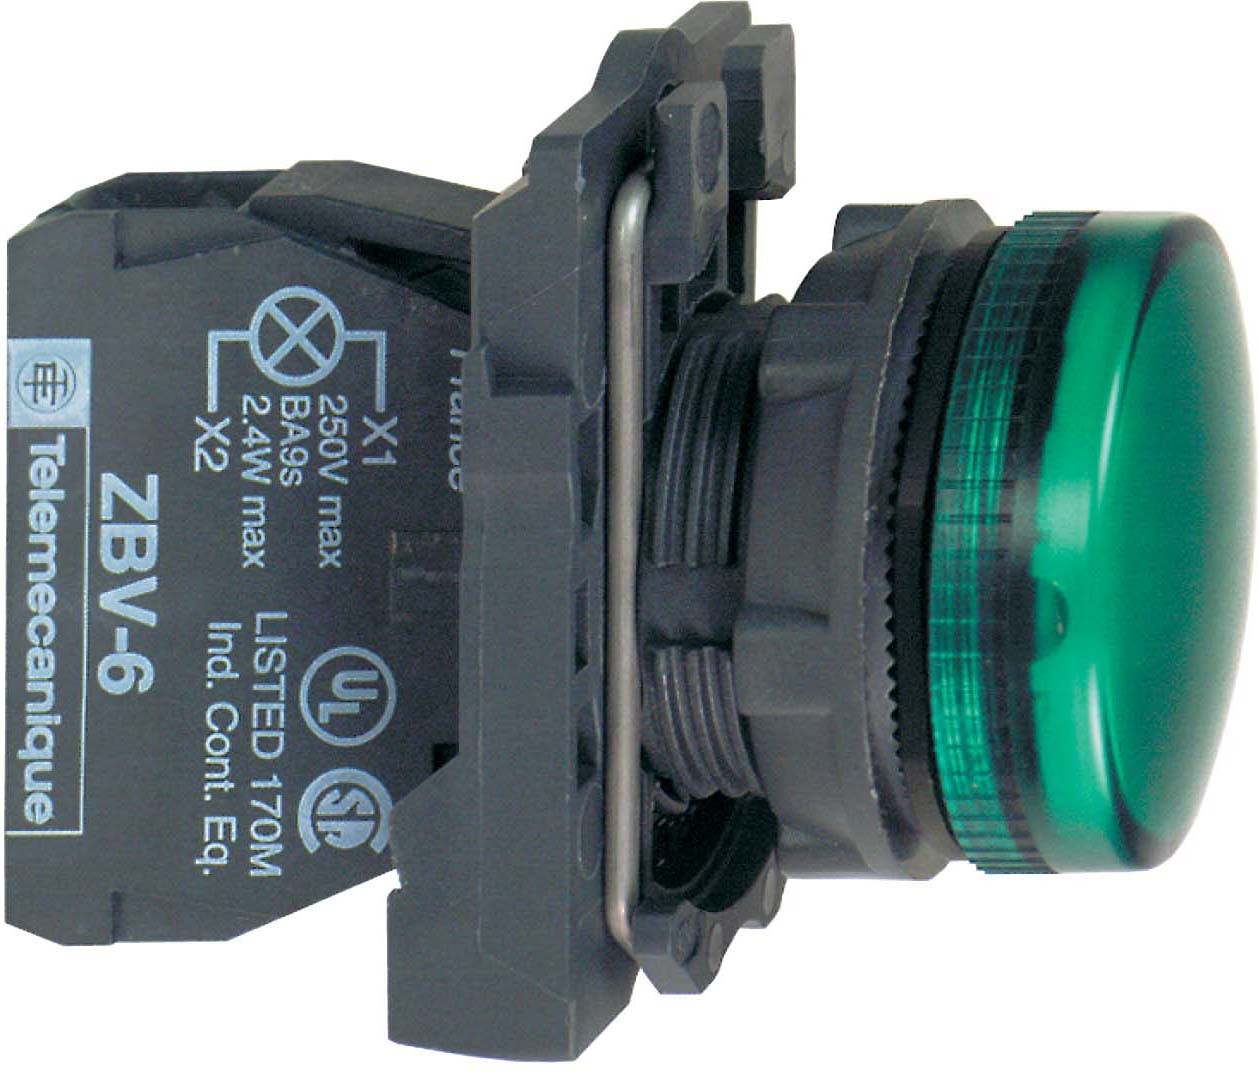 Schneider Electric XB5AVM3 Leuchtmelder grün +LED 230-240V 50/60Hz